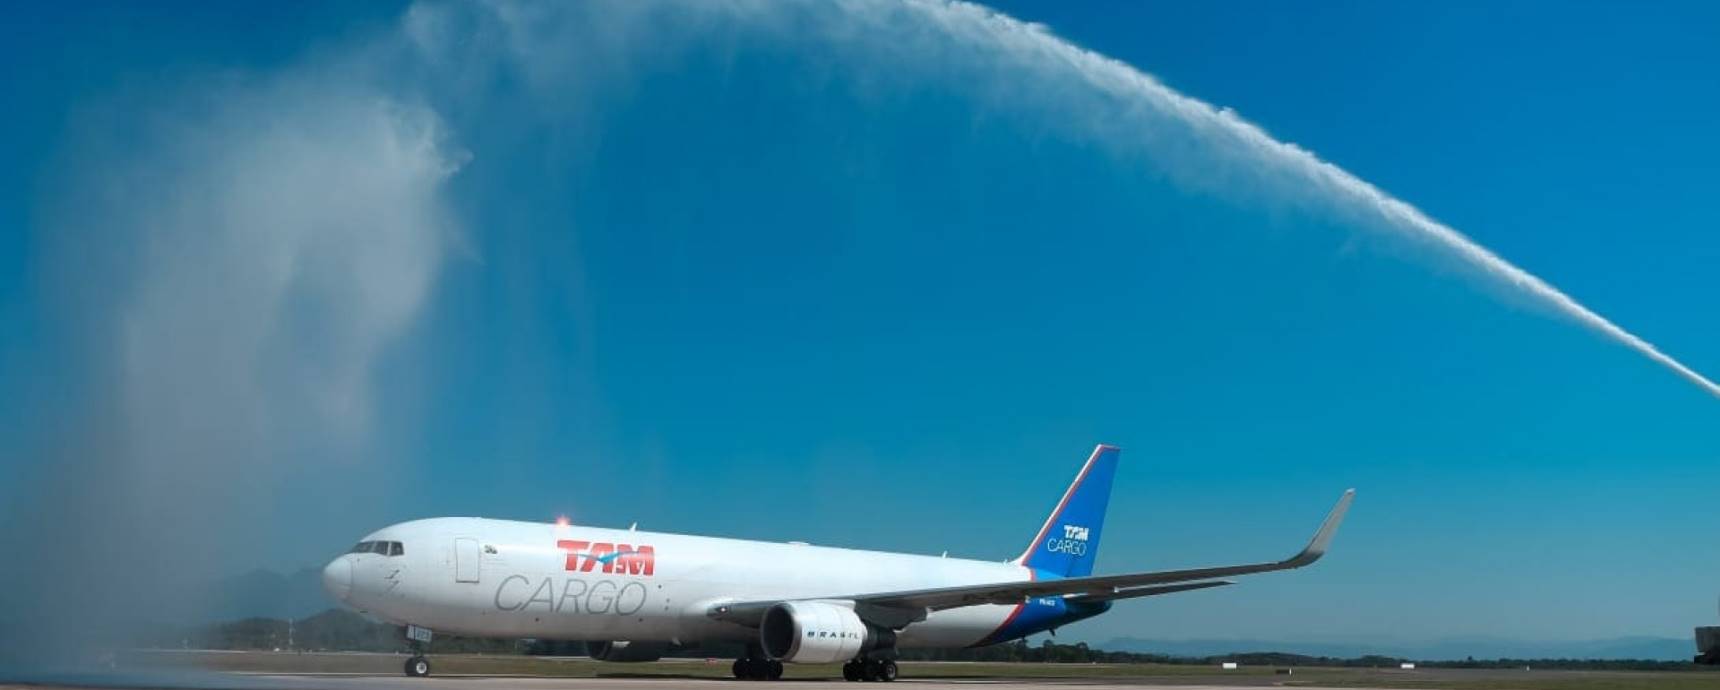 Floripa Airport e LATAM Cargo inauguram oficialmente a rota cargueira inédita Miami-Florianópolis